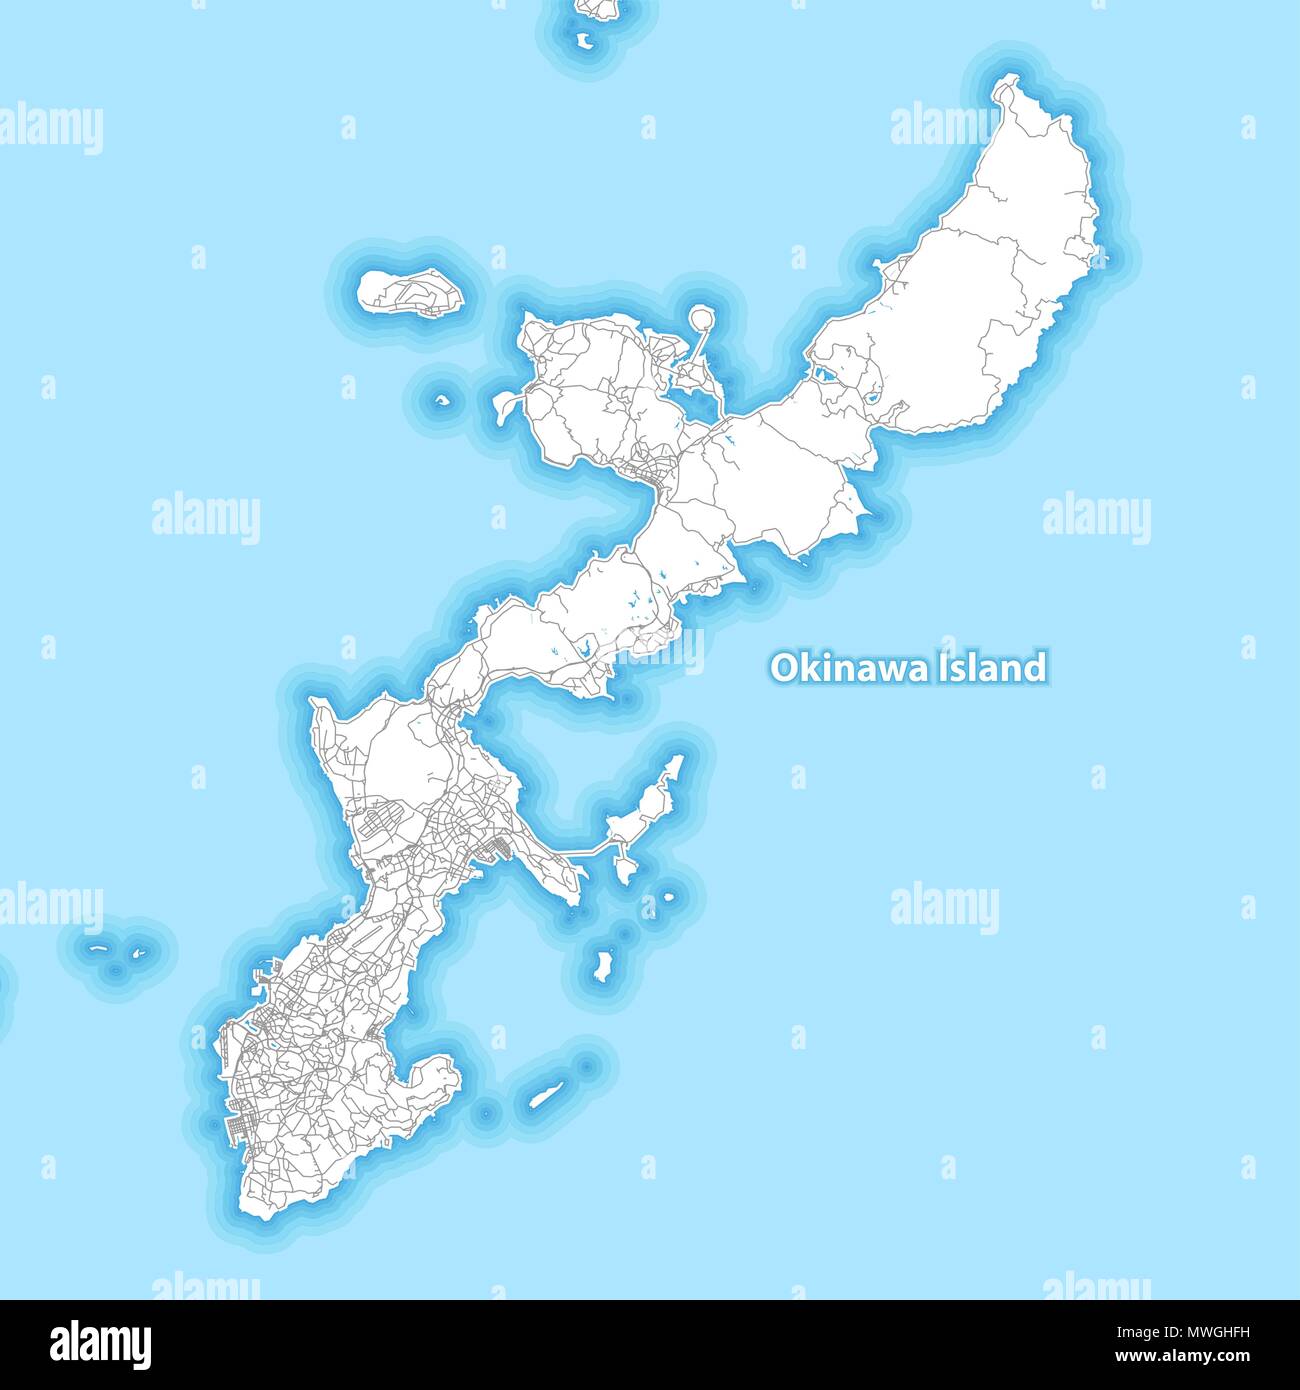 Site de l'île d'Okinawa, au Japon avec la plus grande des autoroutes, des routes et les îles et d'îlots Illustration de Vecteur